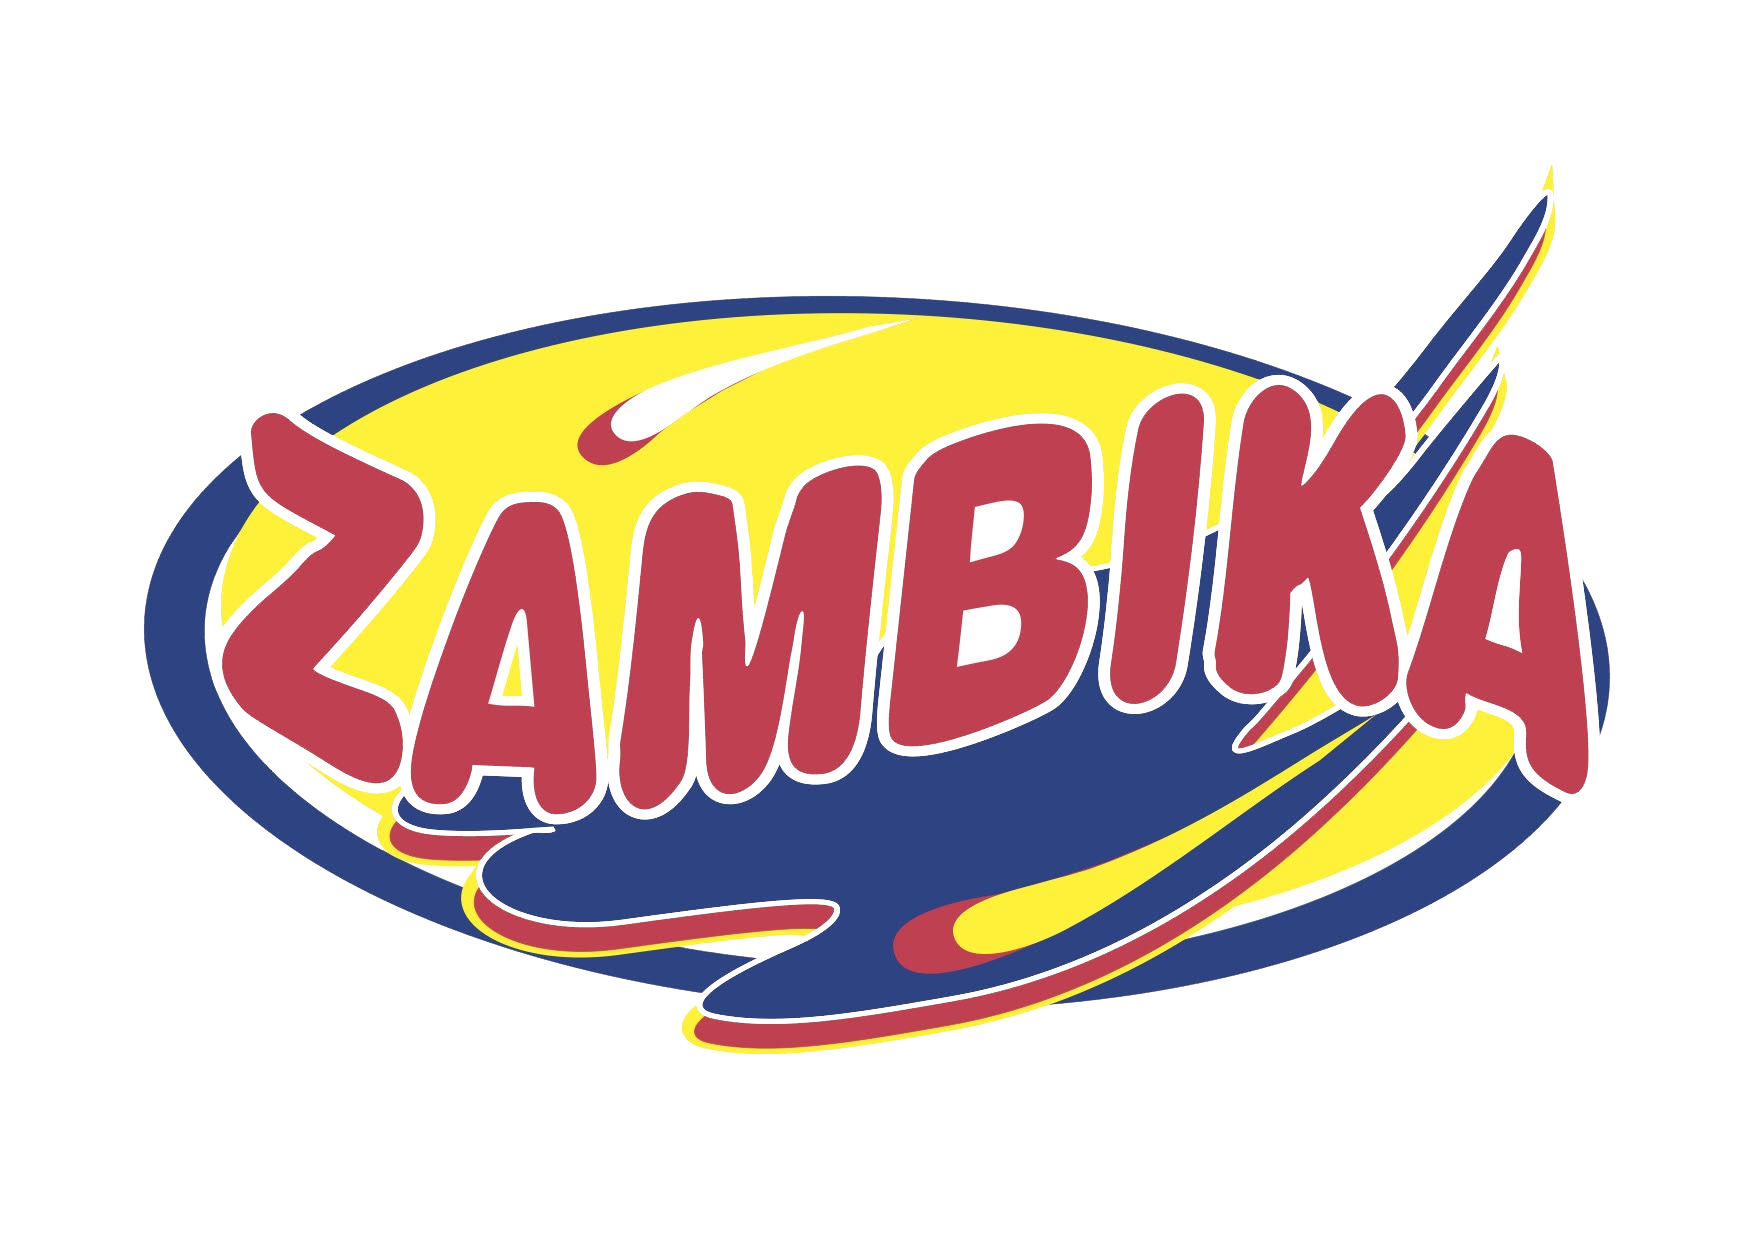 Zambika Bakery Limited